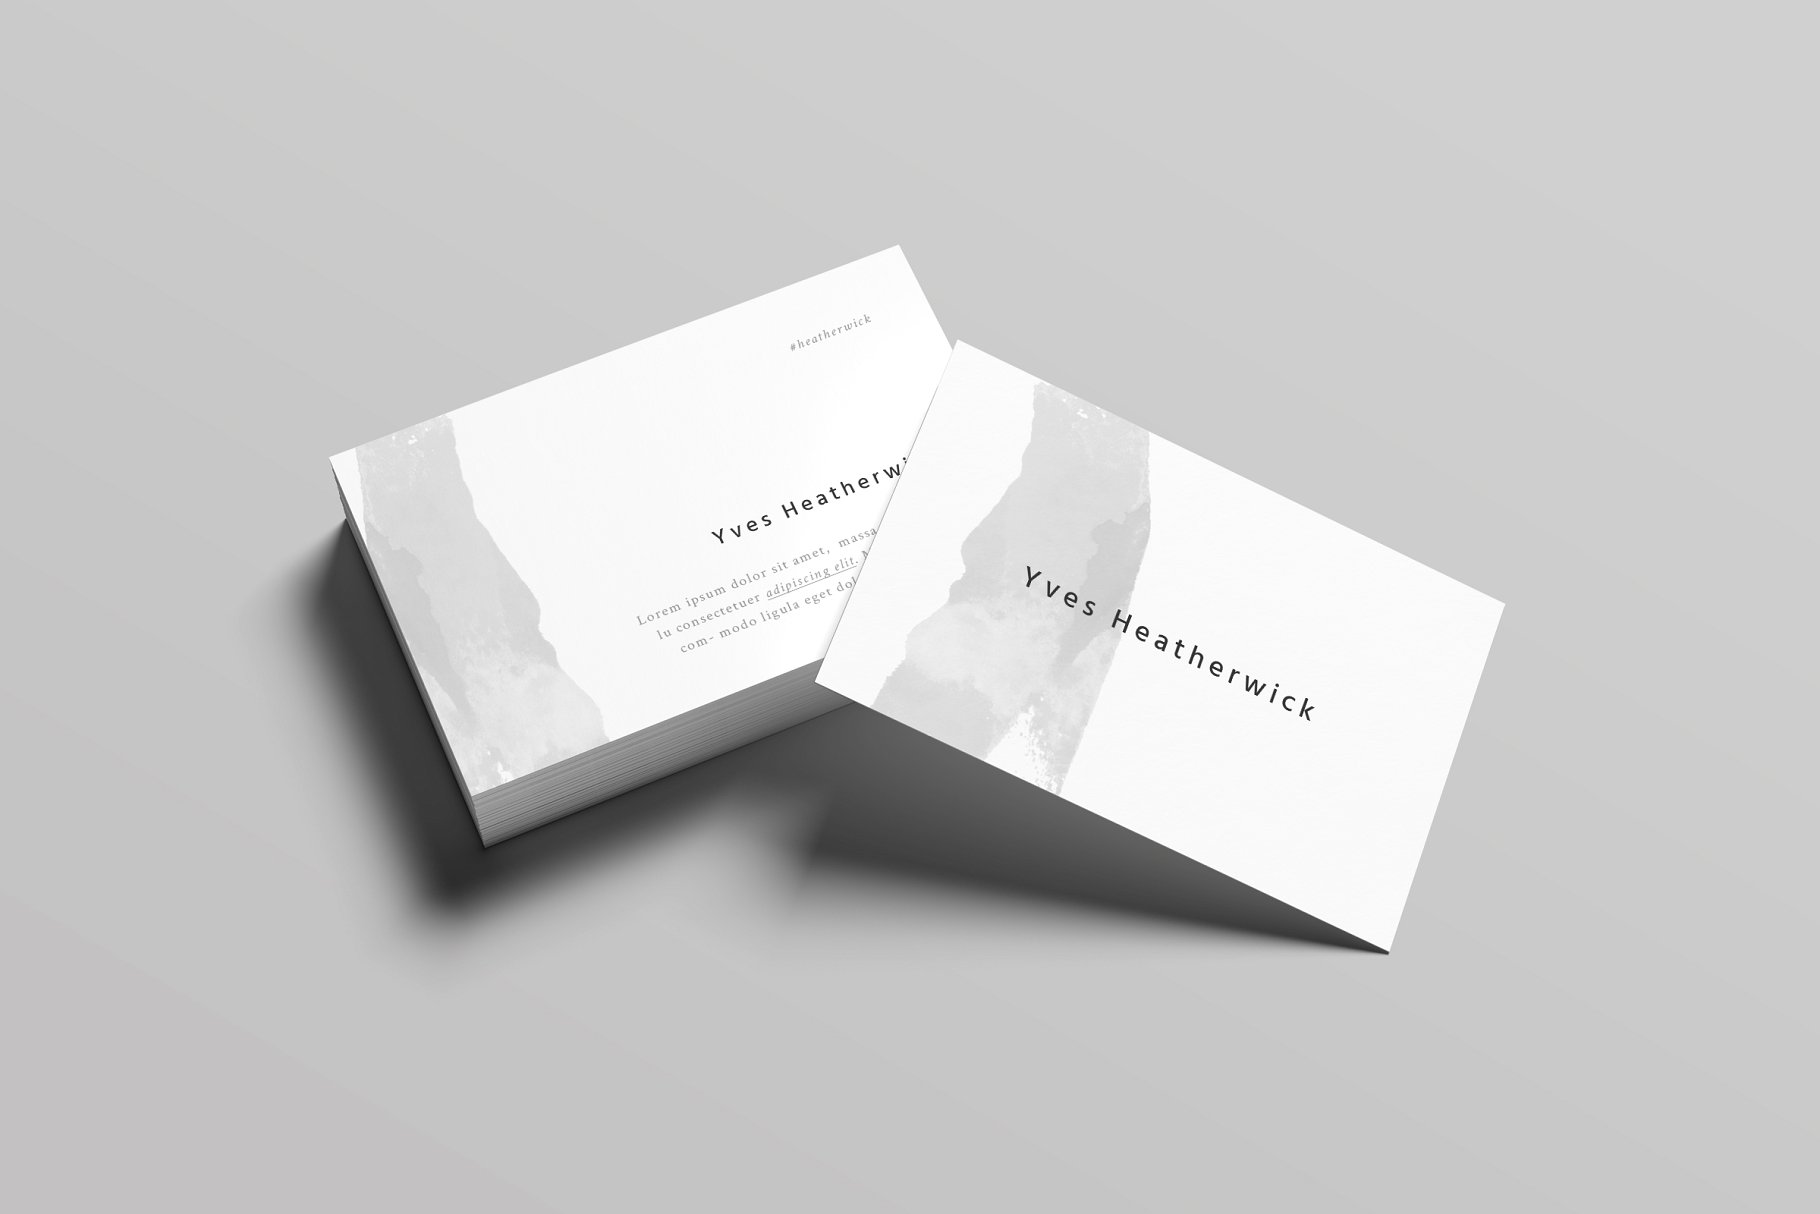 极简主义设计风格企业名片设计模板 Heatherwick Business Card Template插图(1)